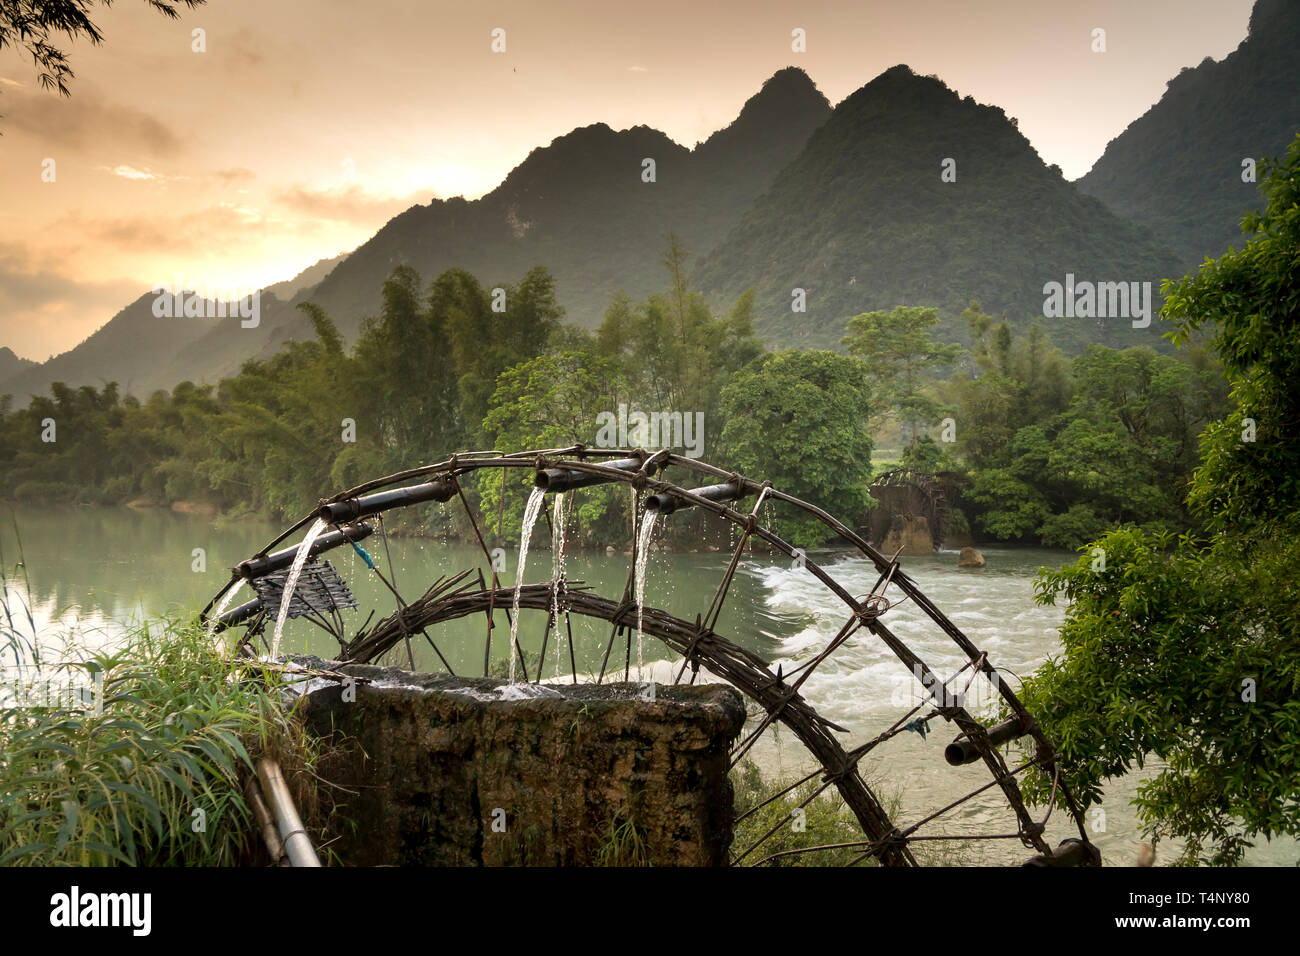 Bambus Wasserrad erhält Wasser aus dem Fluss Reisfelder zu bewässern. Besondere Landschaft der Cao Bang Provinz Berge, Vietnam Stockfoto